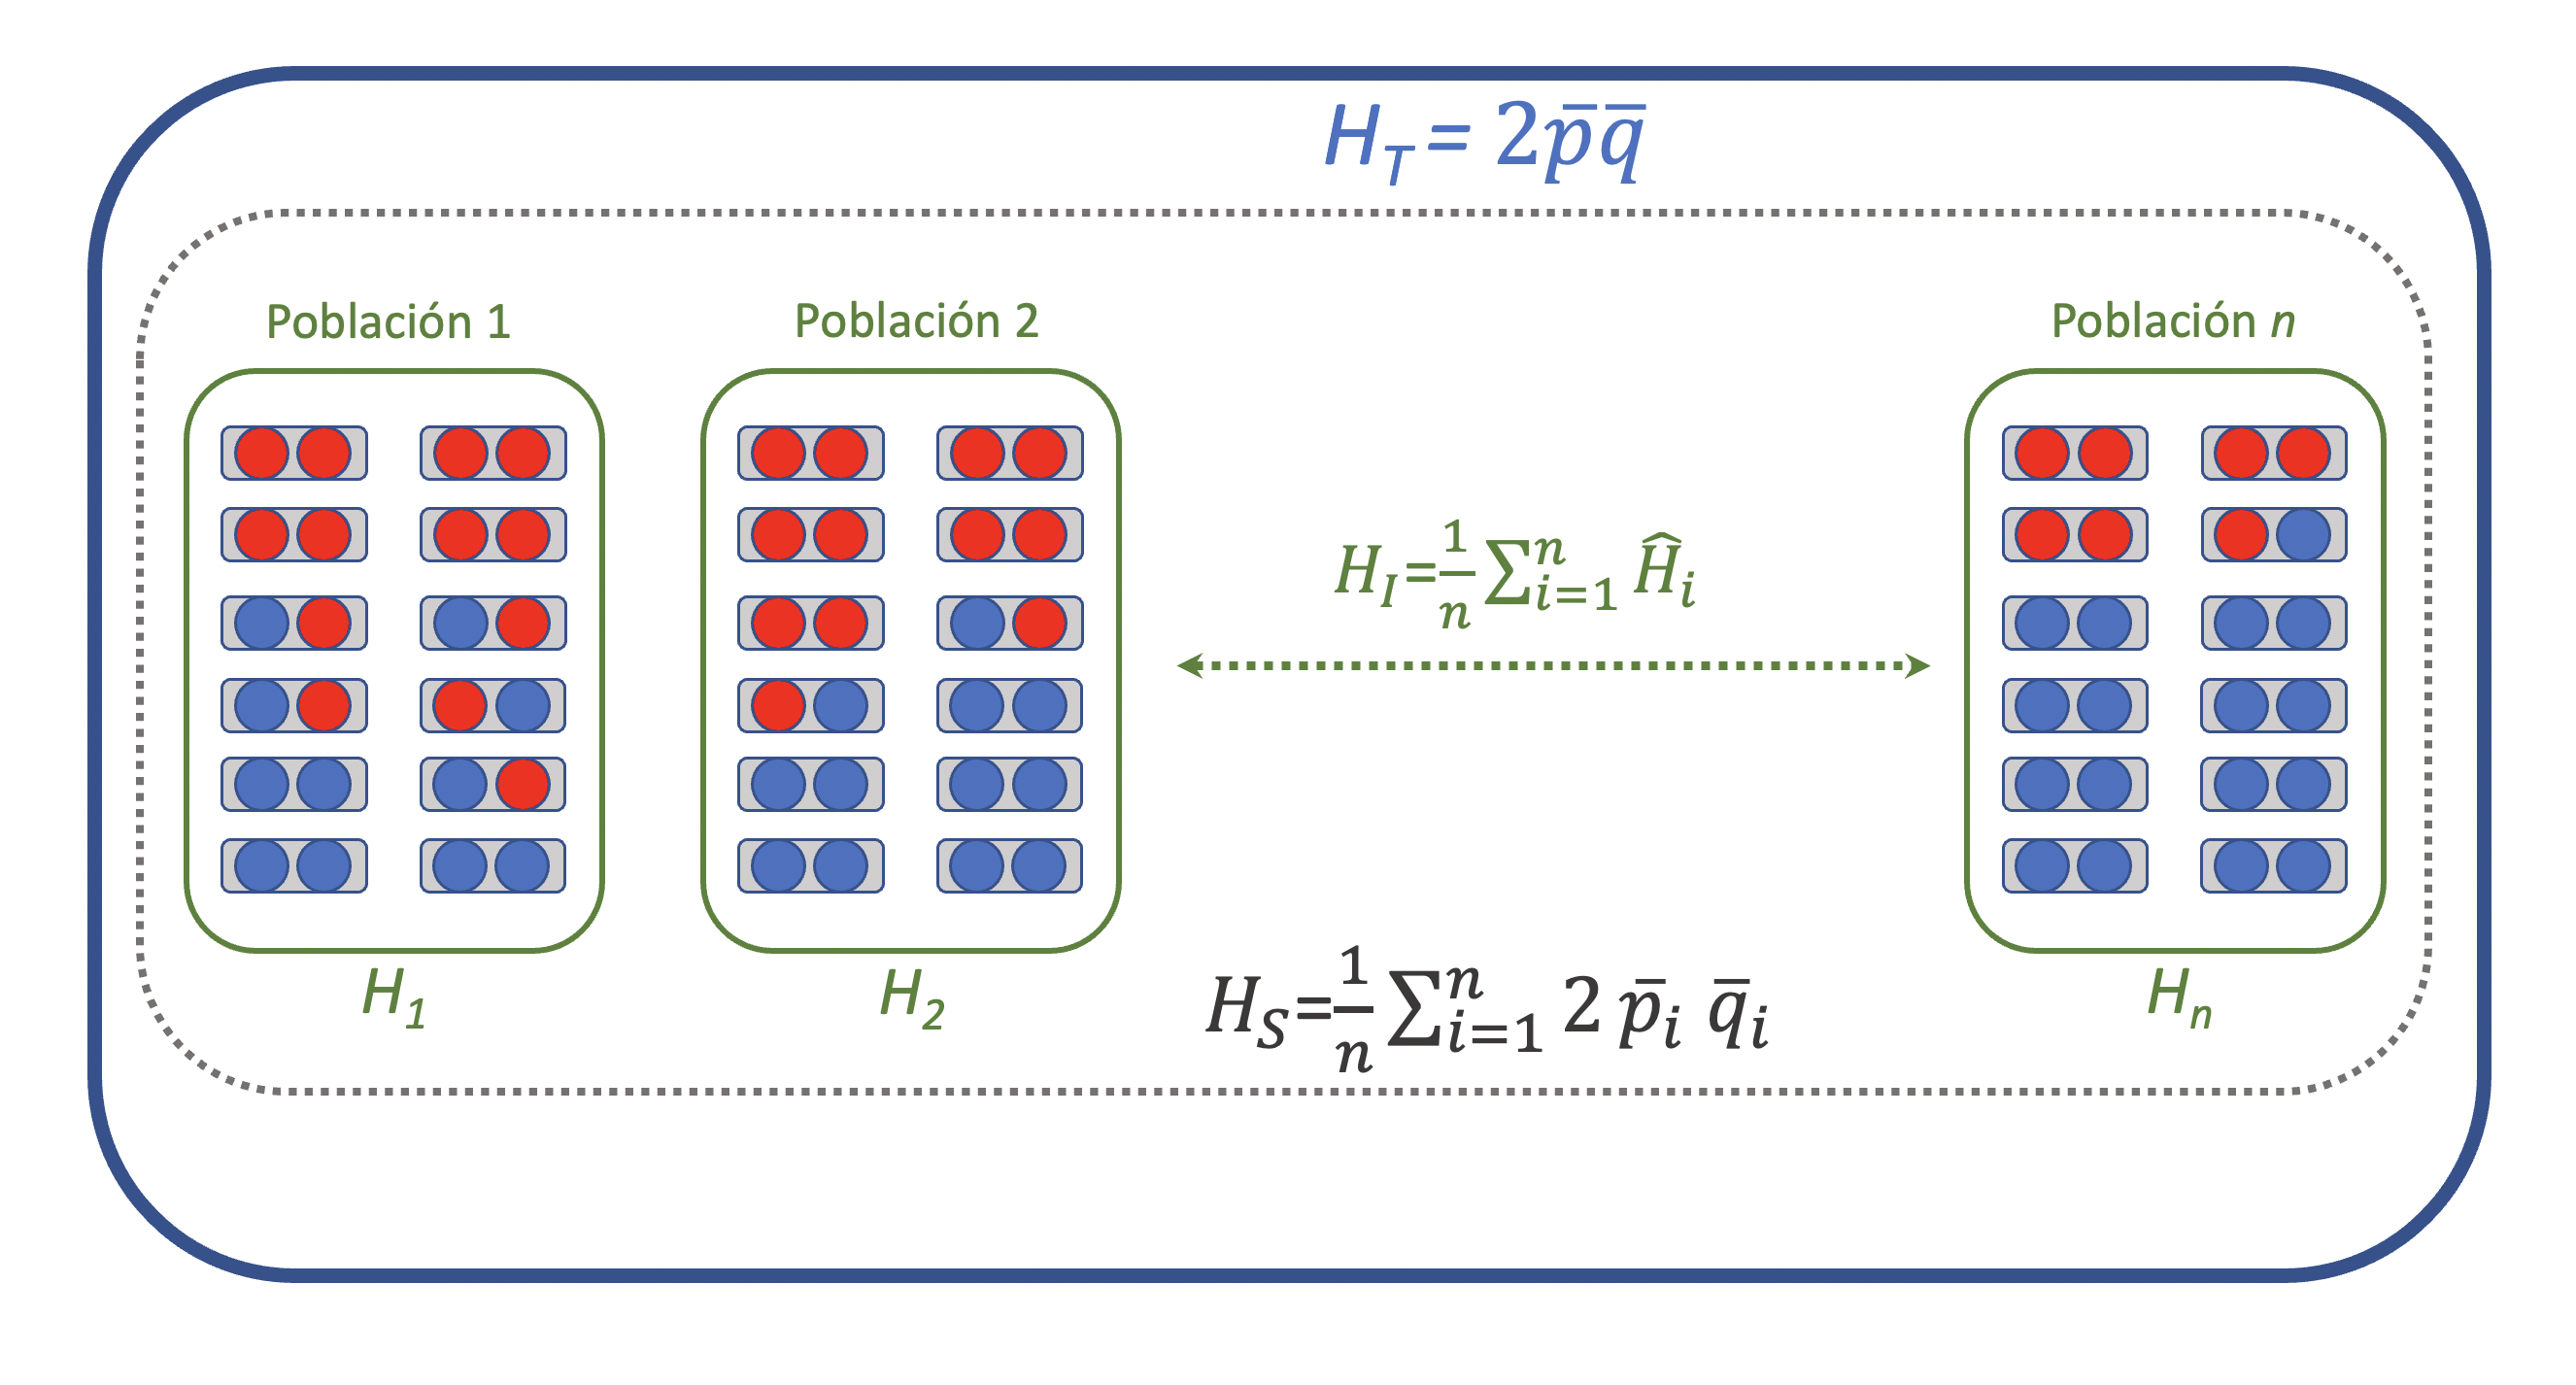 Estructuración de una gran población (marco en azul) como un ensemble de poblaciones (marcos en verde) y la distribución de la heterocigosidad observada y esperada a los distintos niveles de agregación, así como los correspondientes estadísticos.